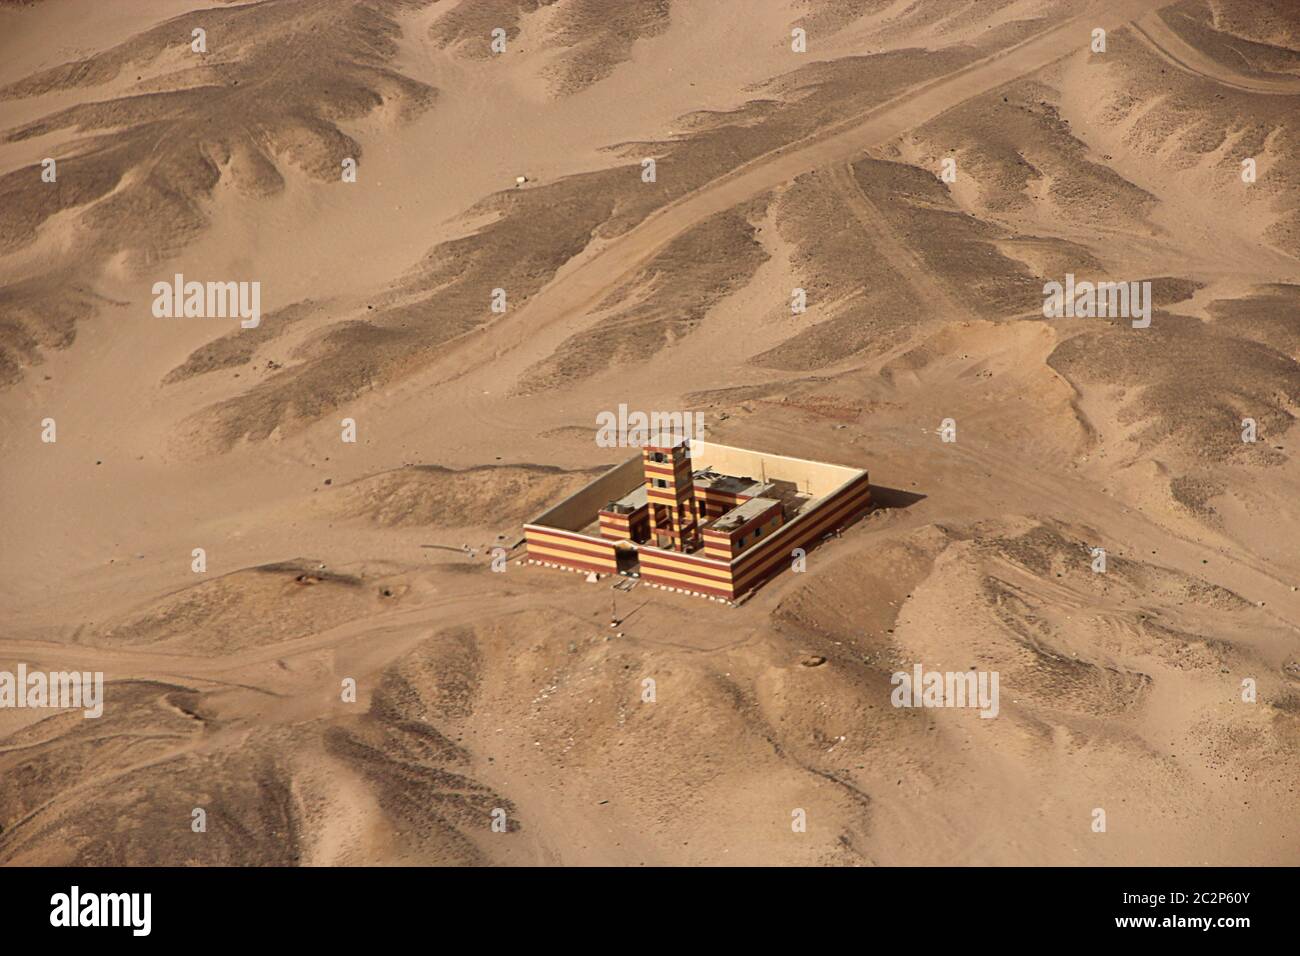 Vista aerea con edificio da solo nel deserto, in Egitto. Immagine panoramica. Casa egiziana vista dall'alto Foto Stock